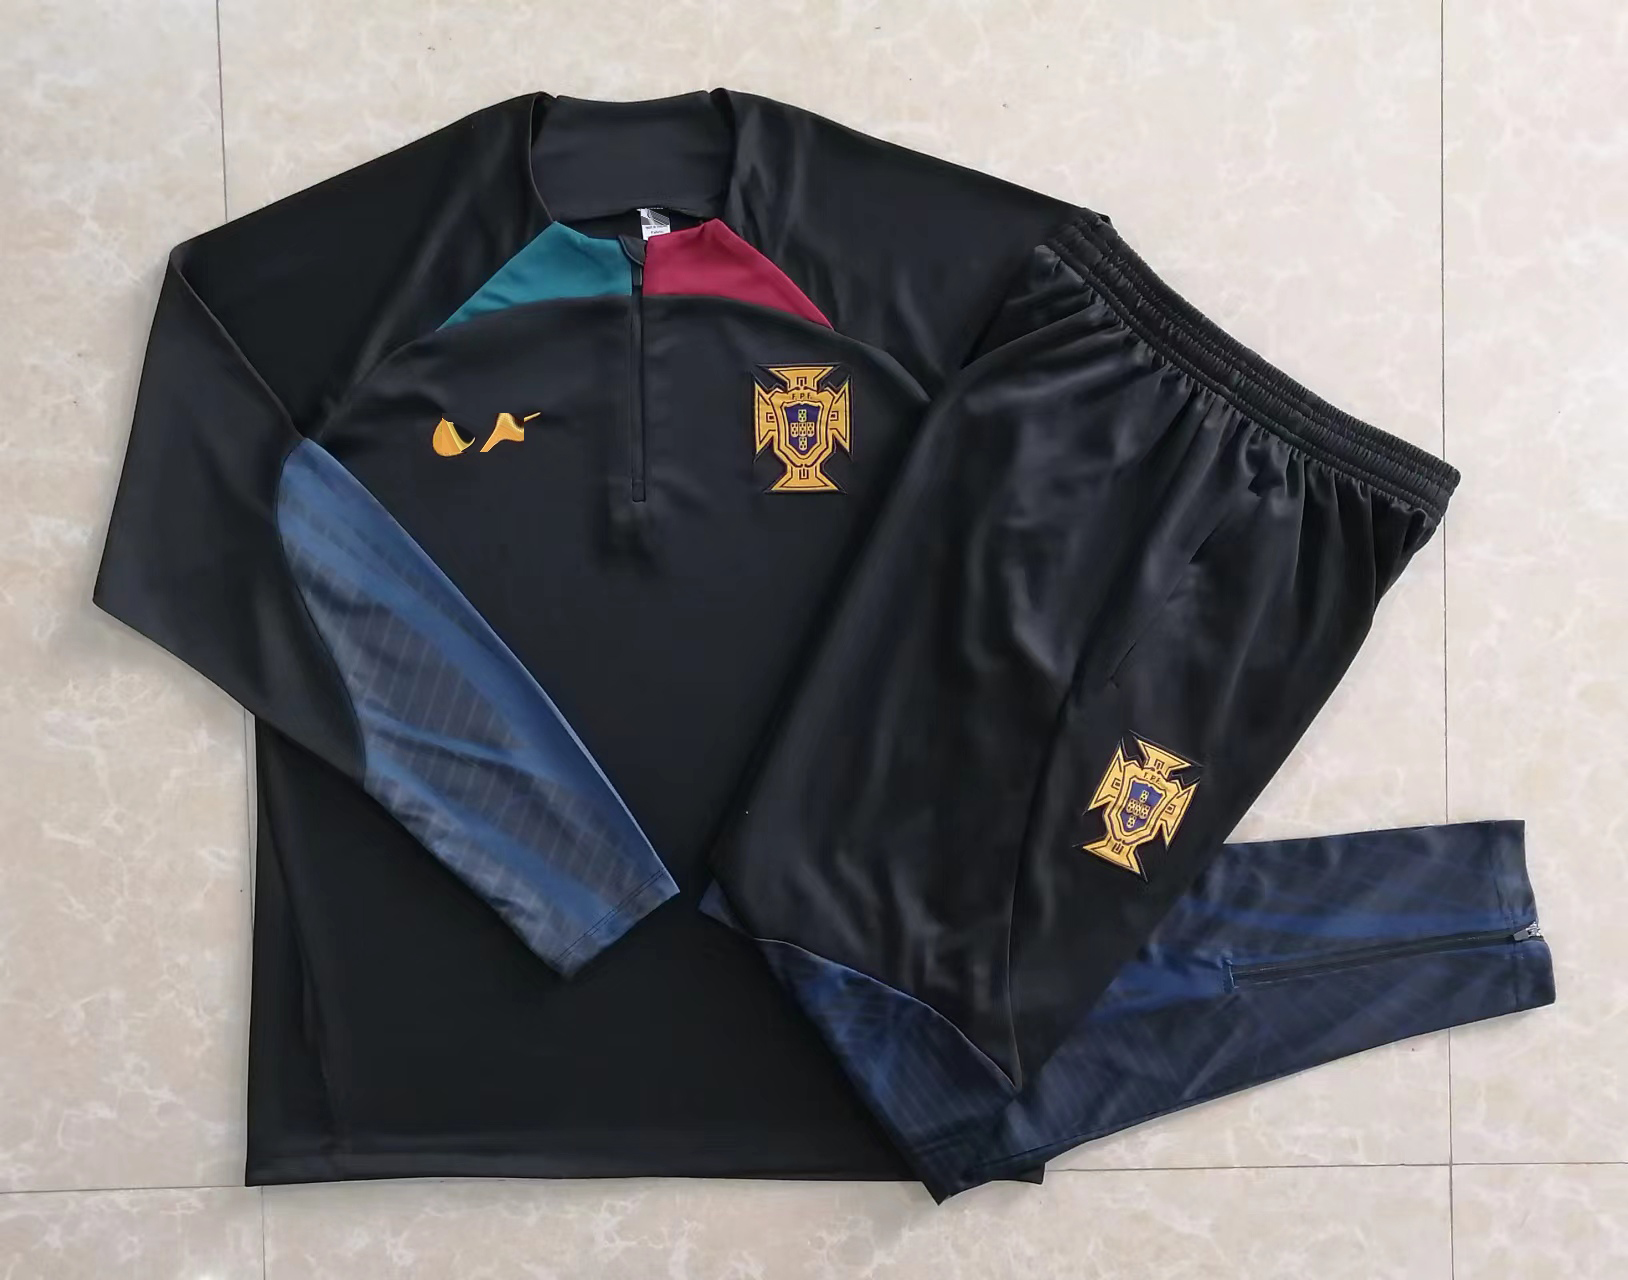 22-23 Portugal heren Trainingspakken LOGO borduren voetbal Training kleding buitensport pak met lange mouwen jogging shirt2626